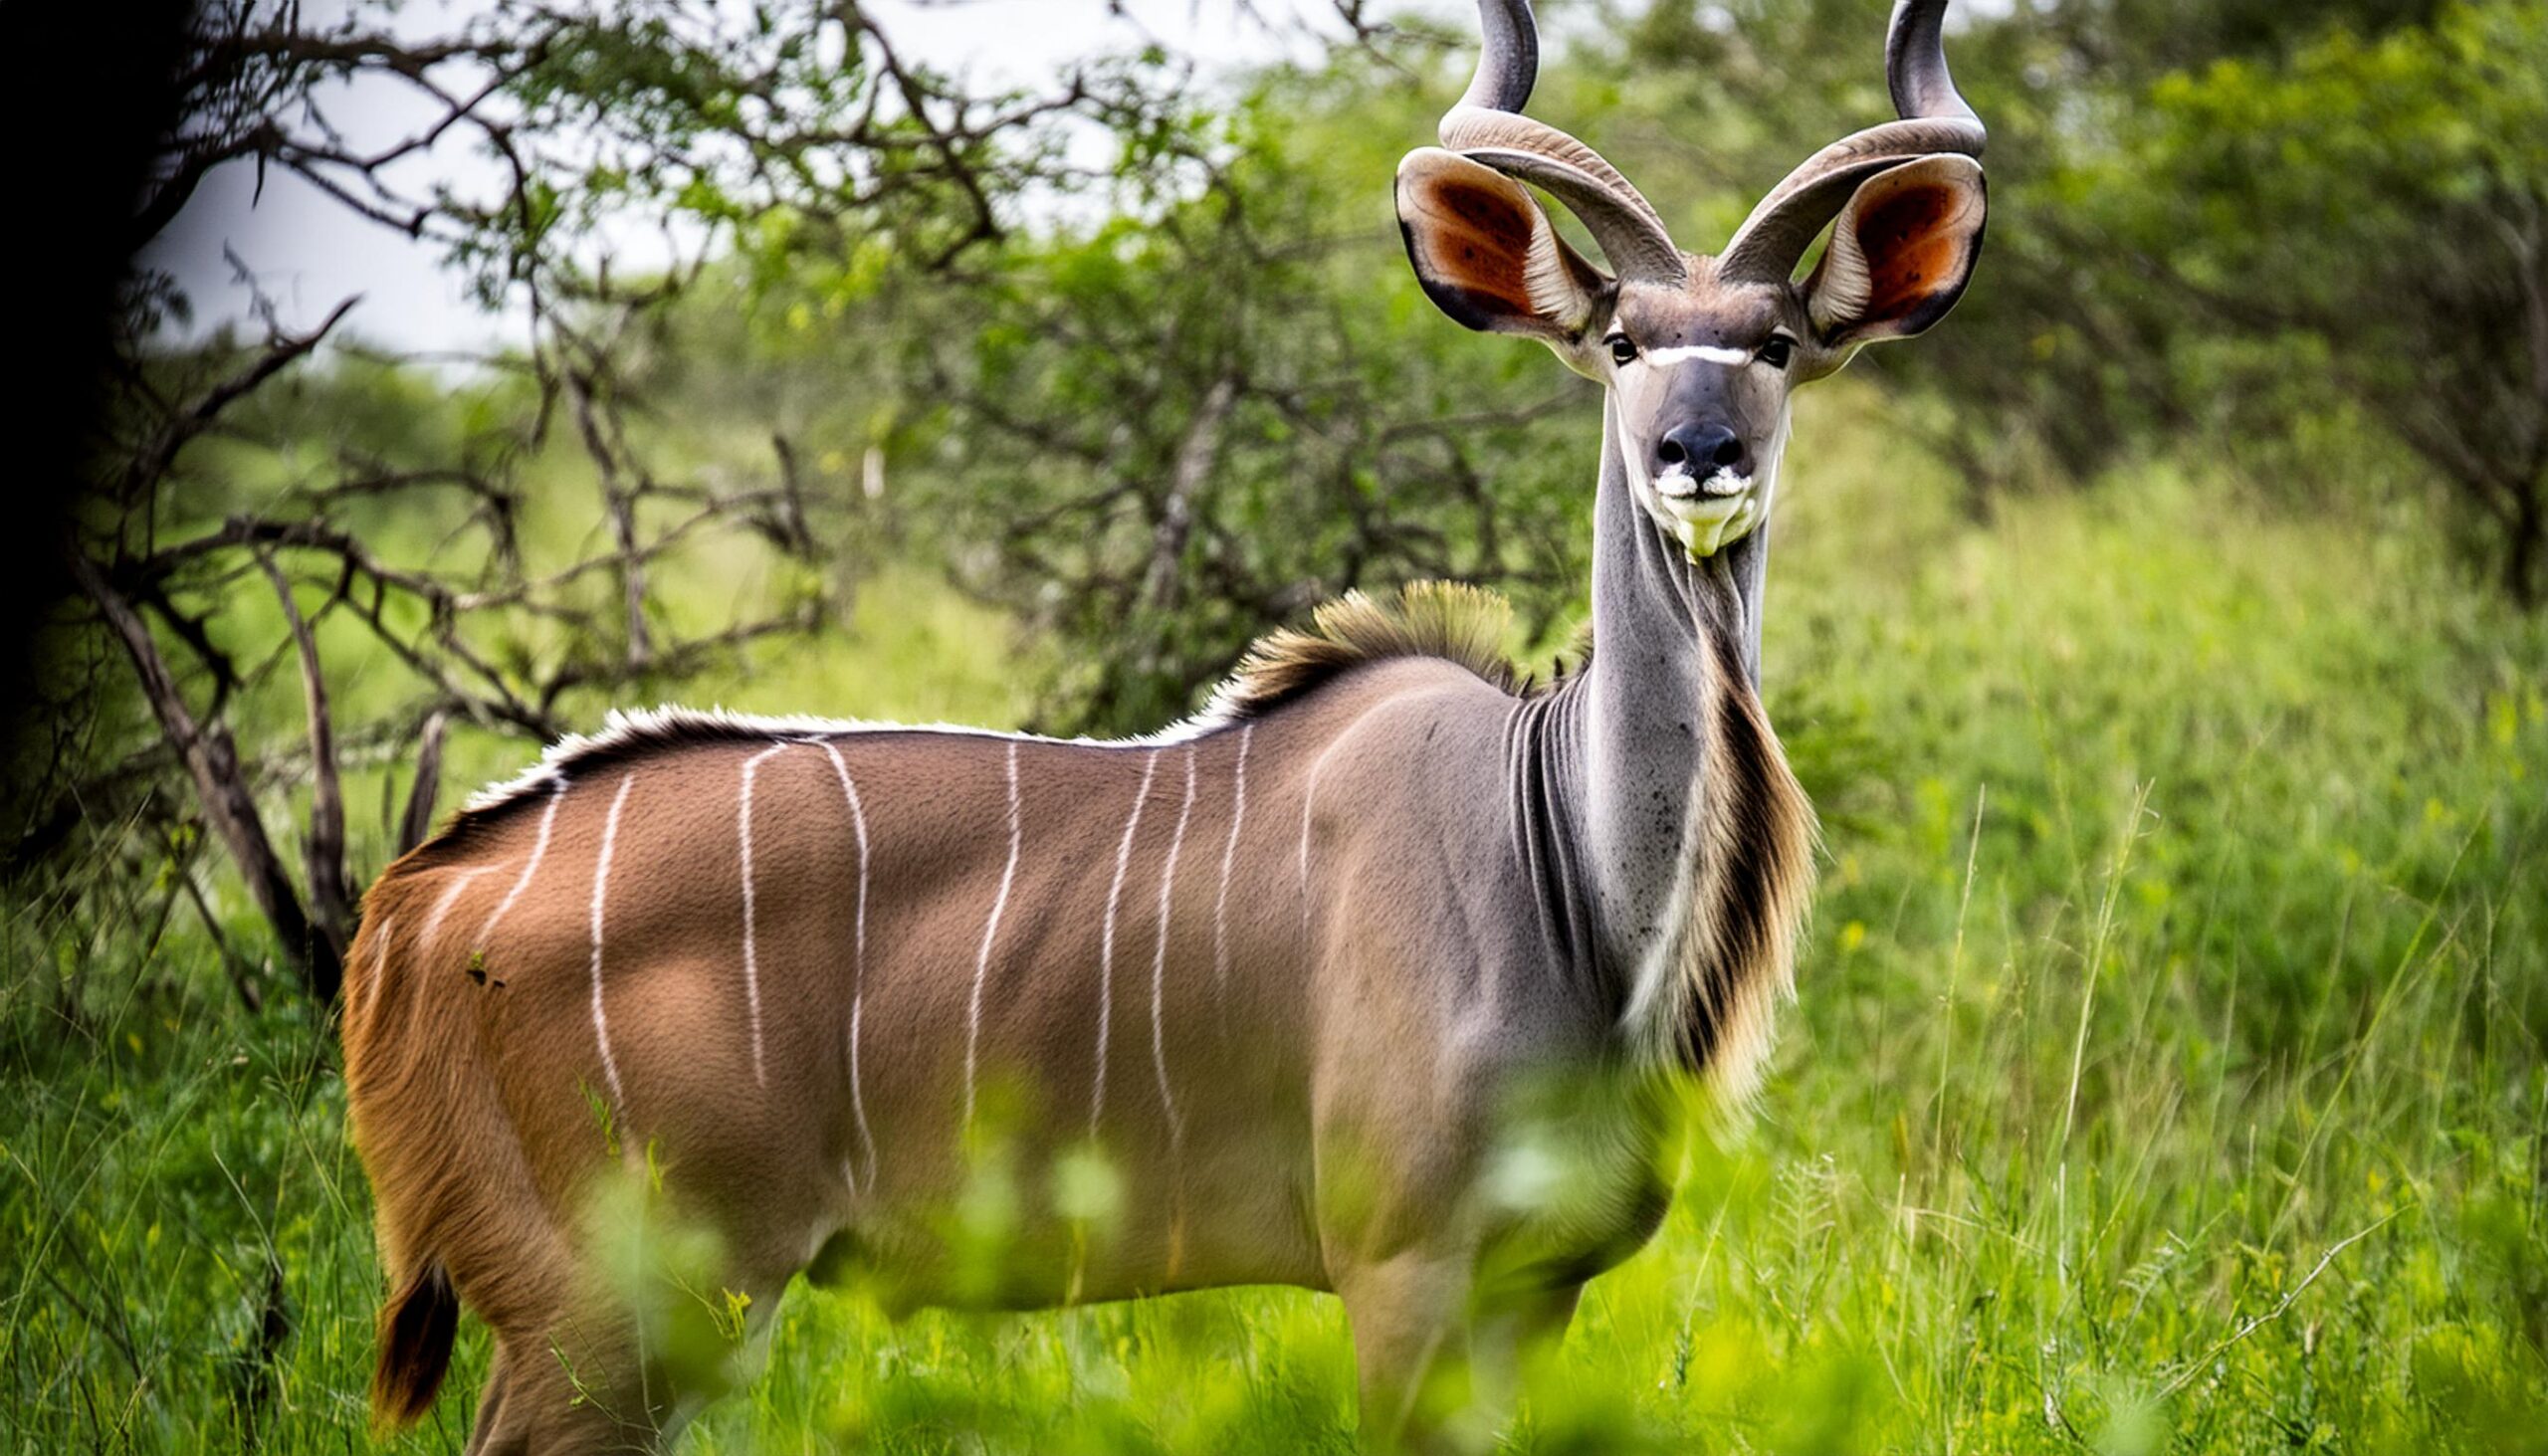 Kudu antelope with Savannah background in spring